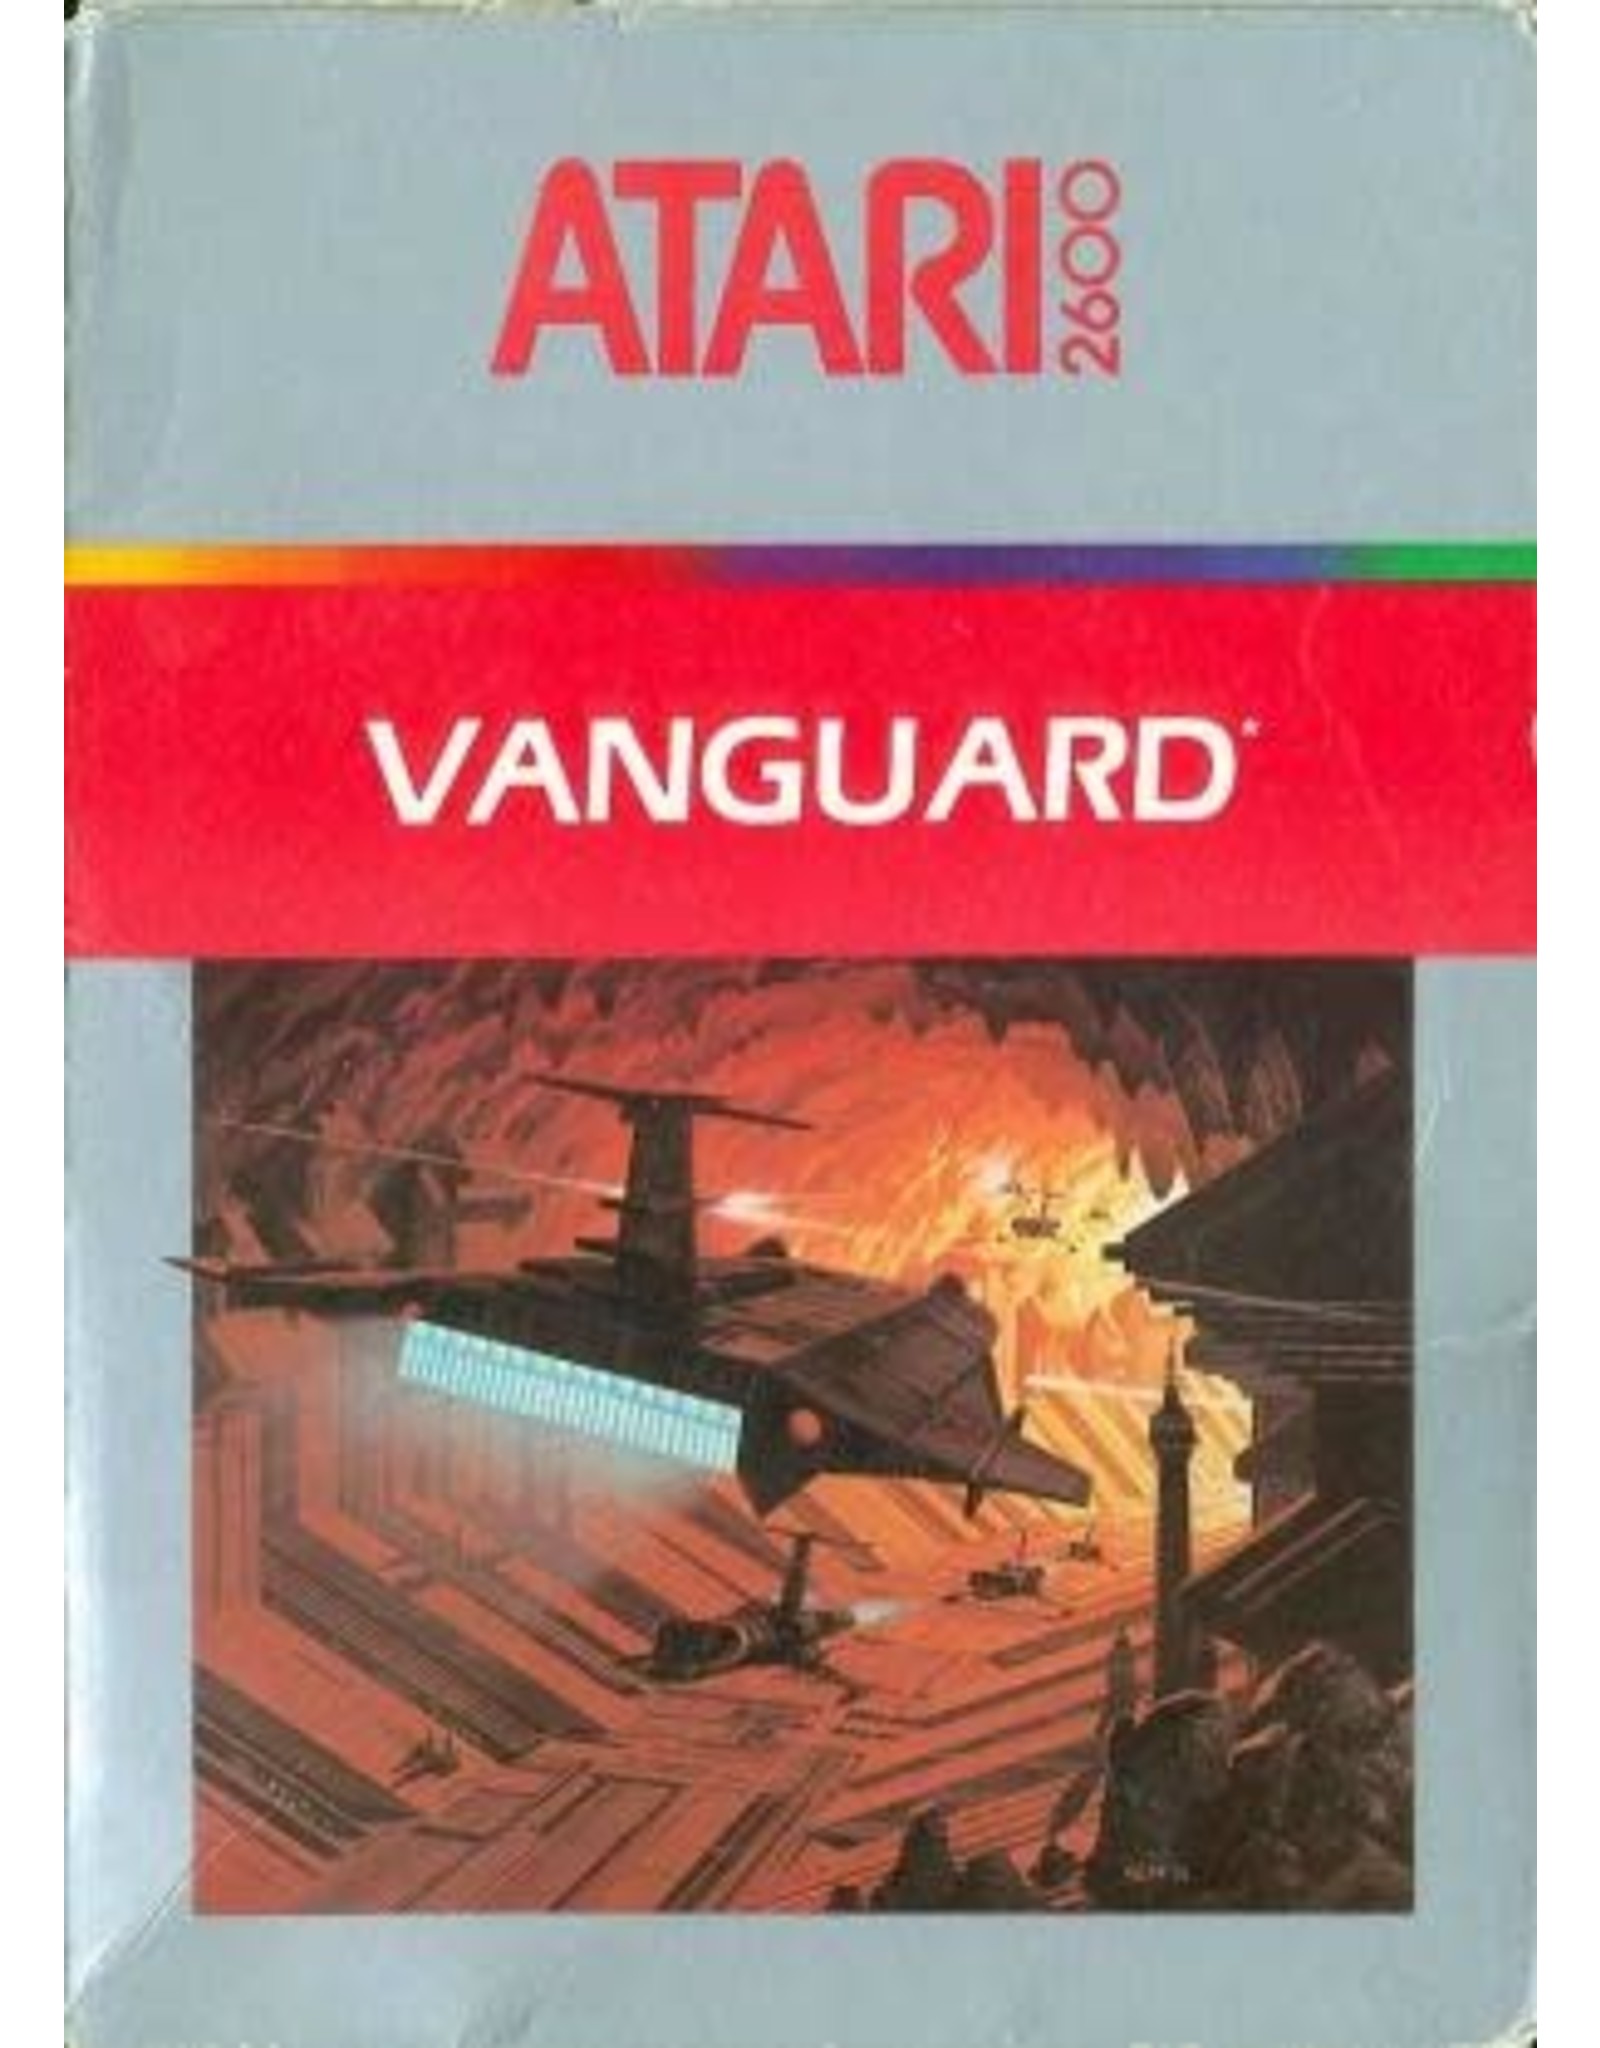 Atari 2600 Vanguard (Cart Only)